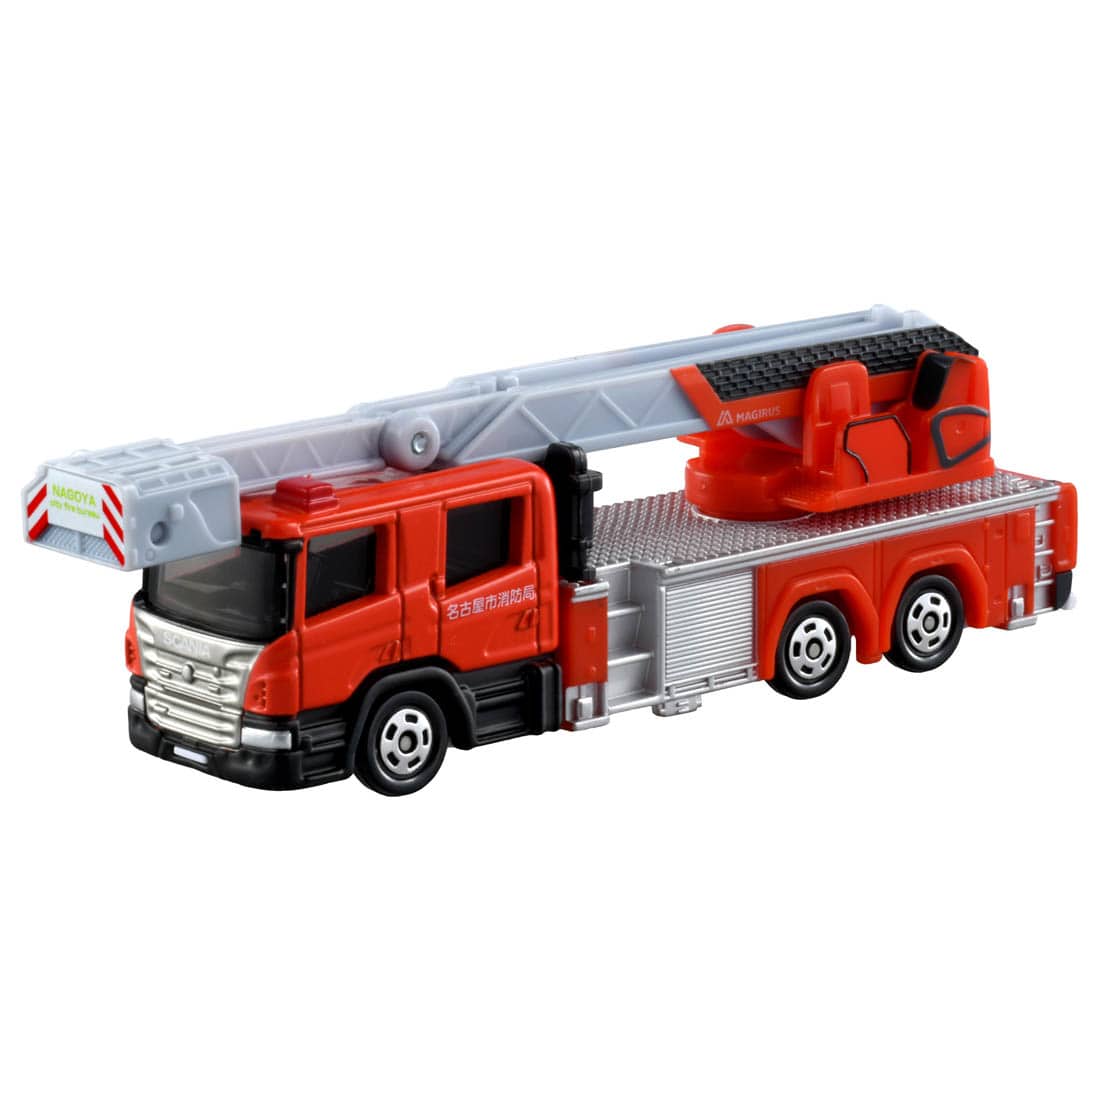 最新な 童友社 24 クイックプラモ はしご消防車とクレーントラック